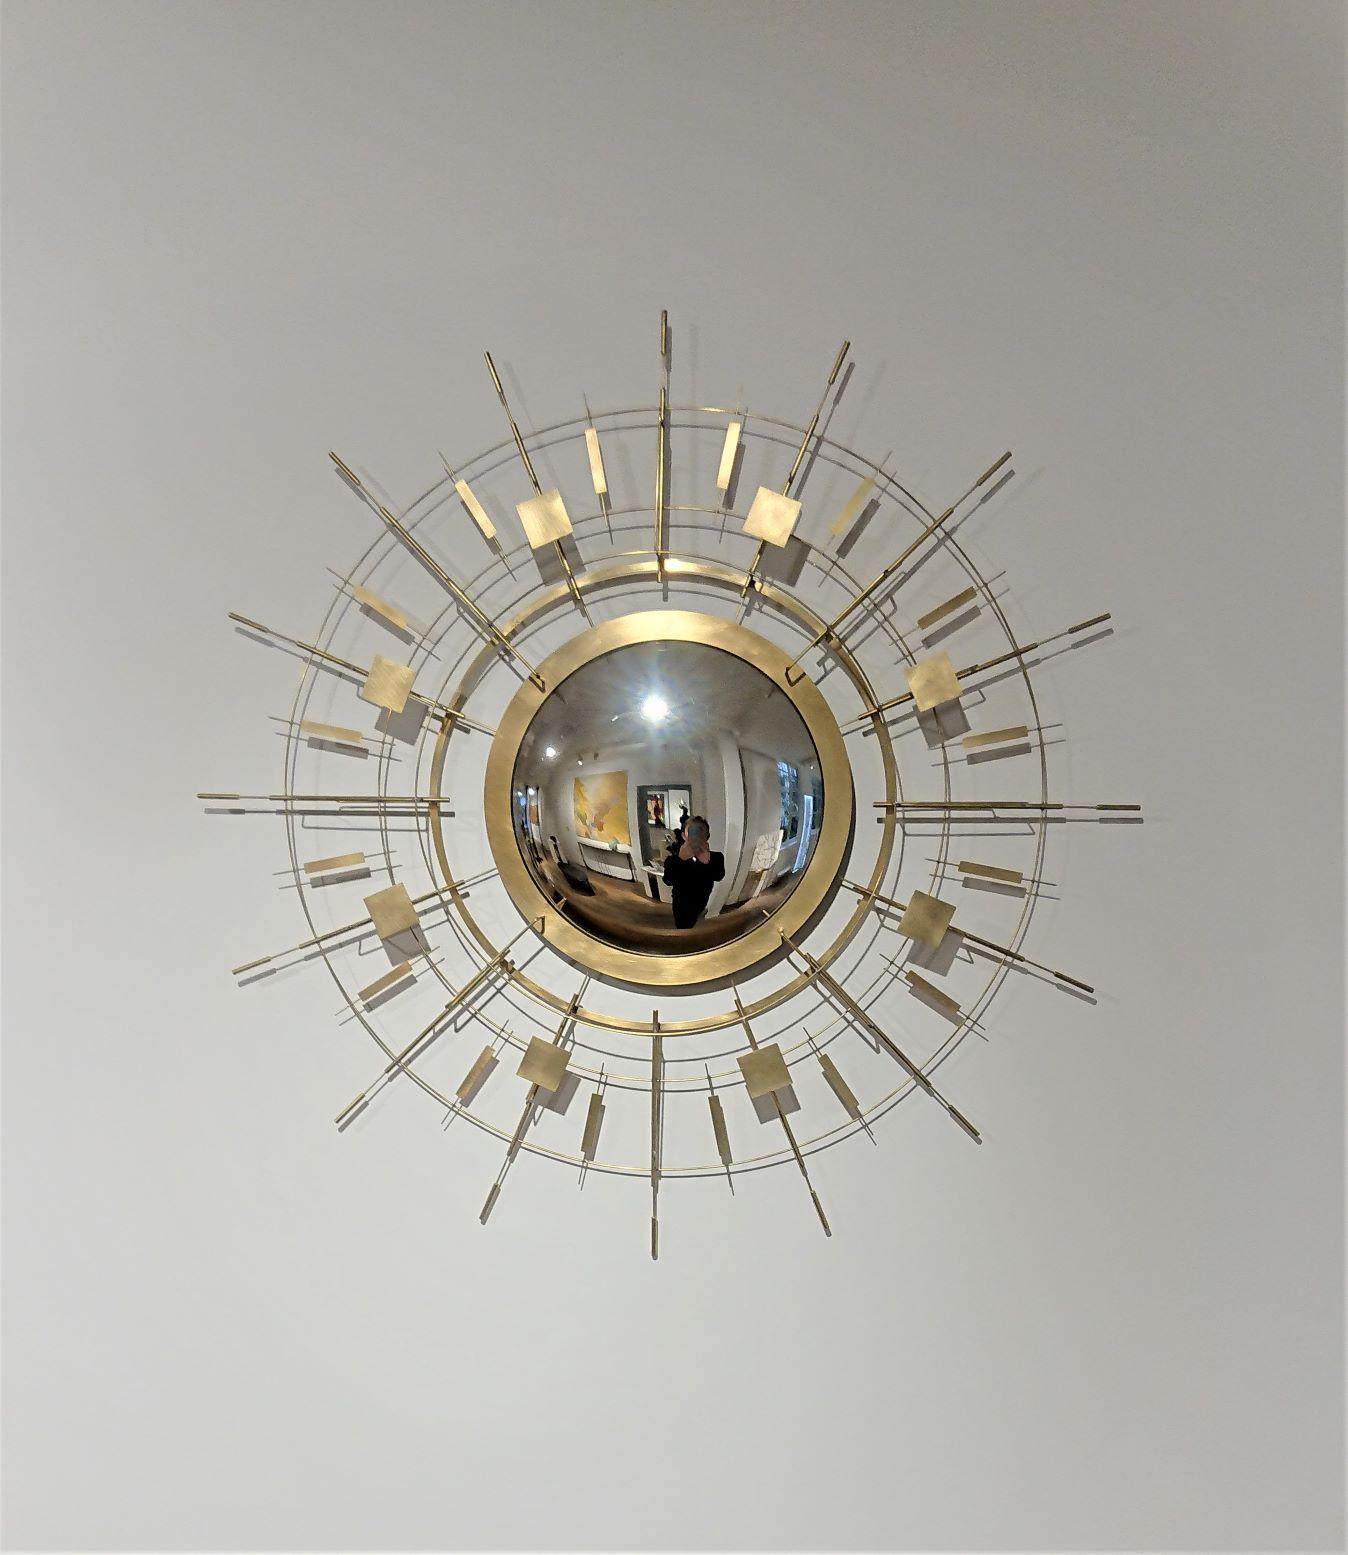 Sunny-Side Two Mirror d'Eric de Dormael, Galerie Negropontes à Paris, France

Éric de Dormael est un artiste non conventionnel, sa trajectoire est loin des sentiers battus. Formé à l'école Saint-Luc de Tournai et à l'Atelier Met de Penninghen, il a